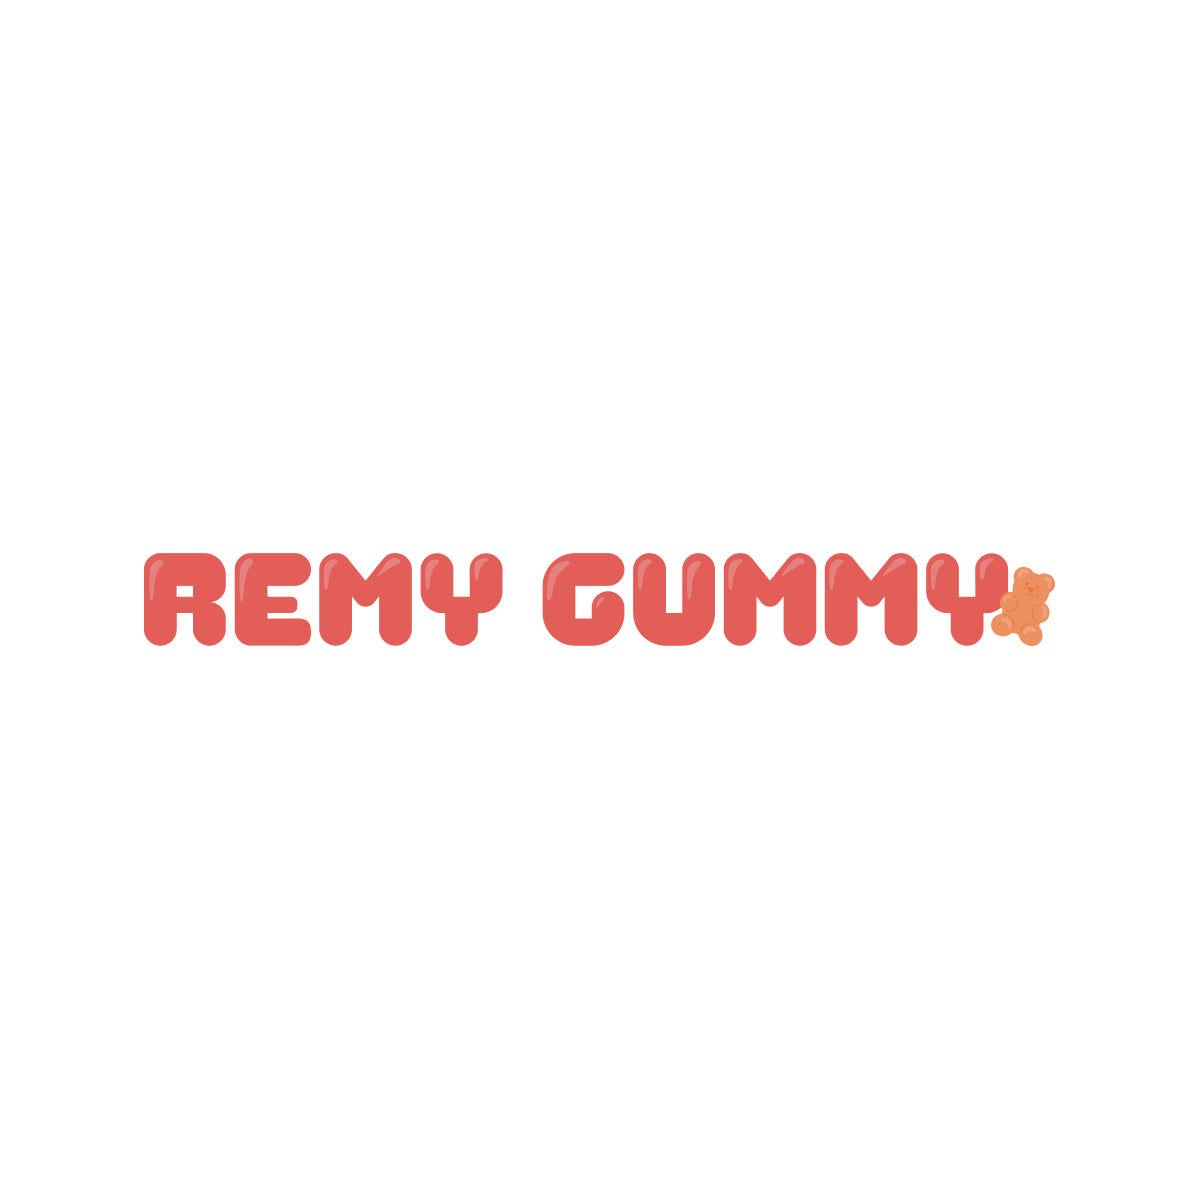 Remy Gummy dog collar